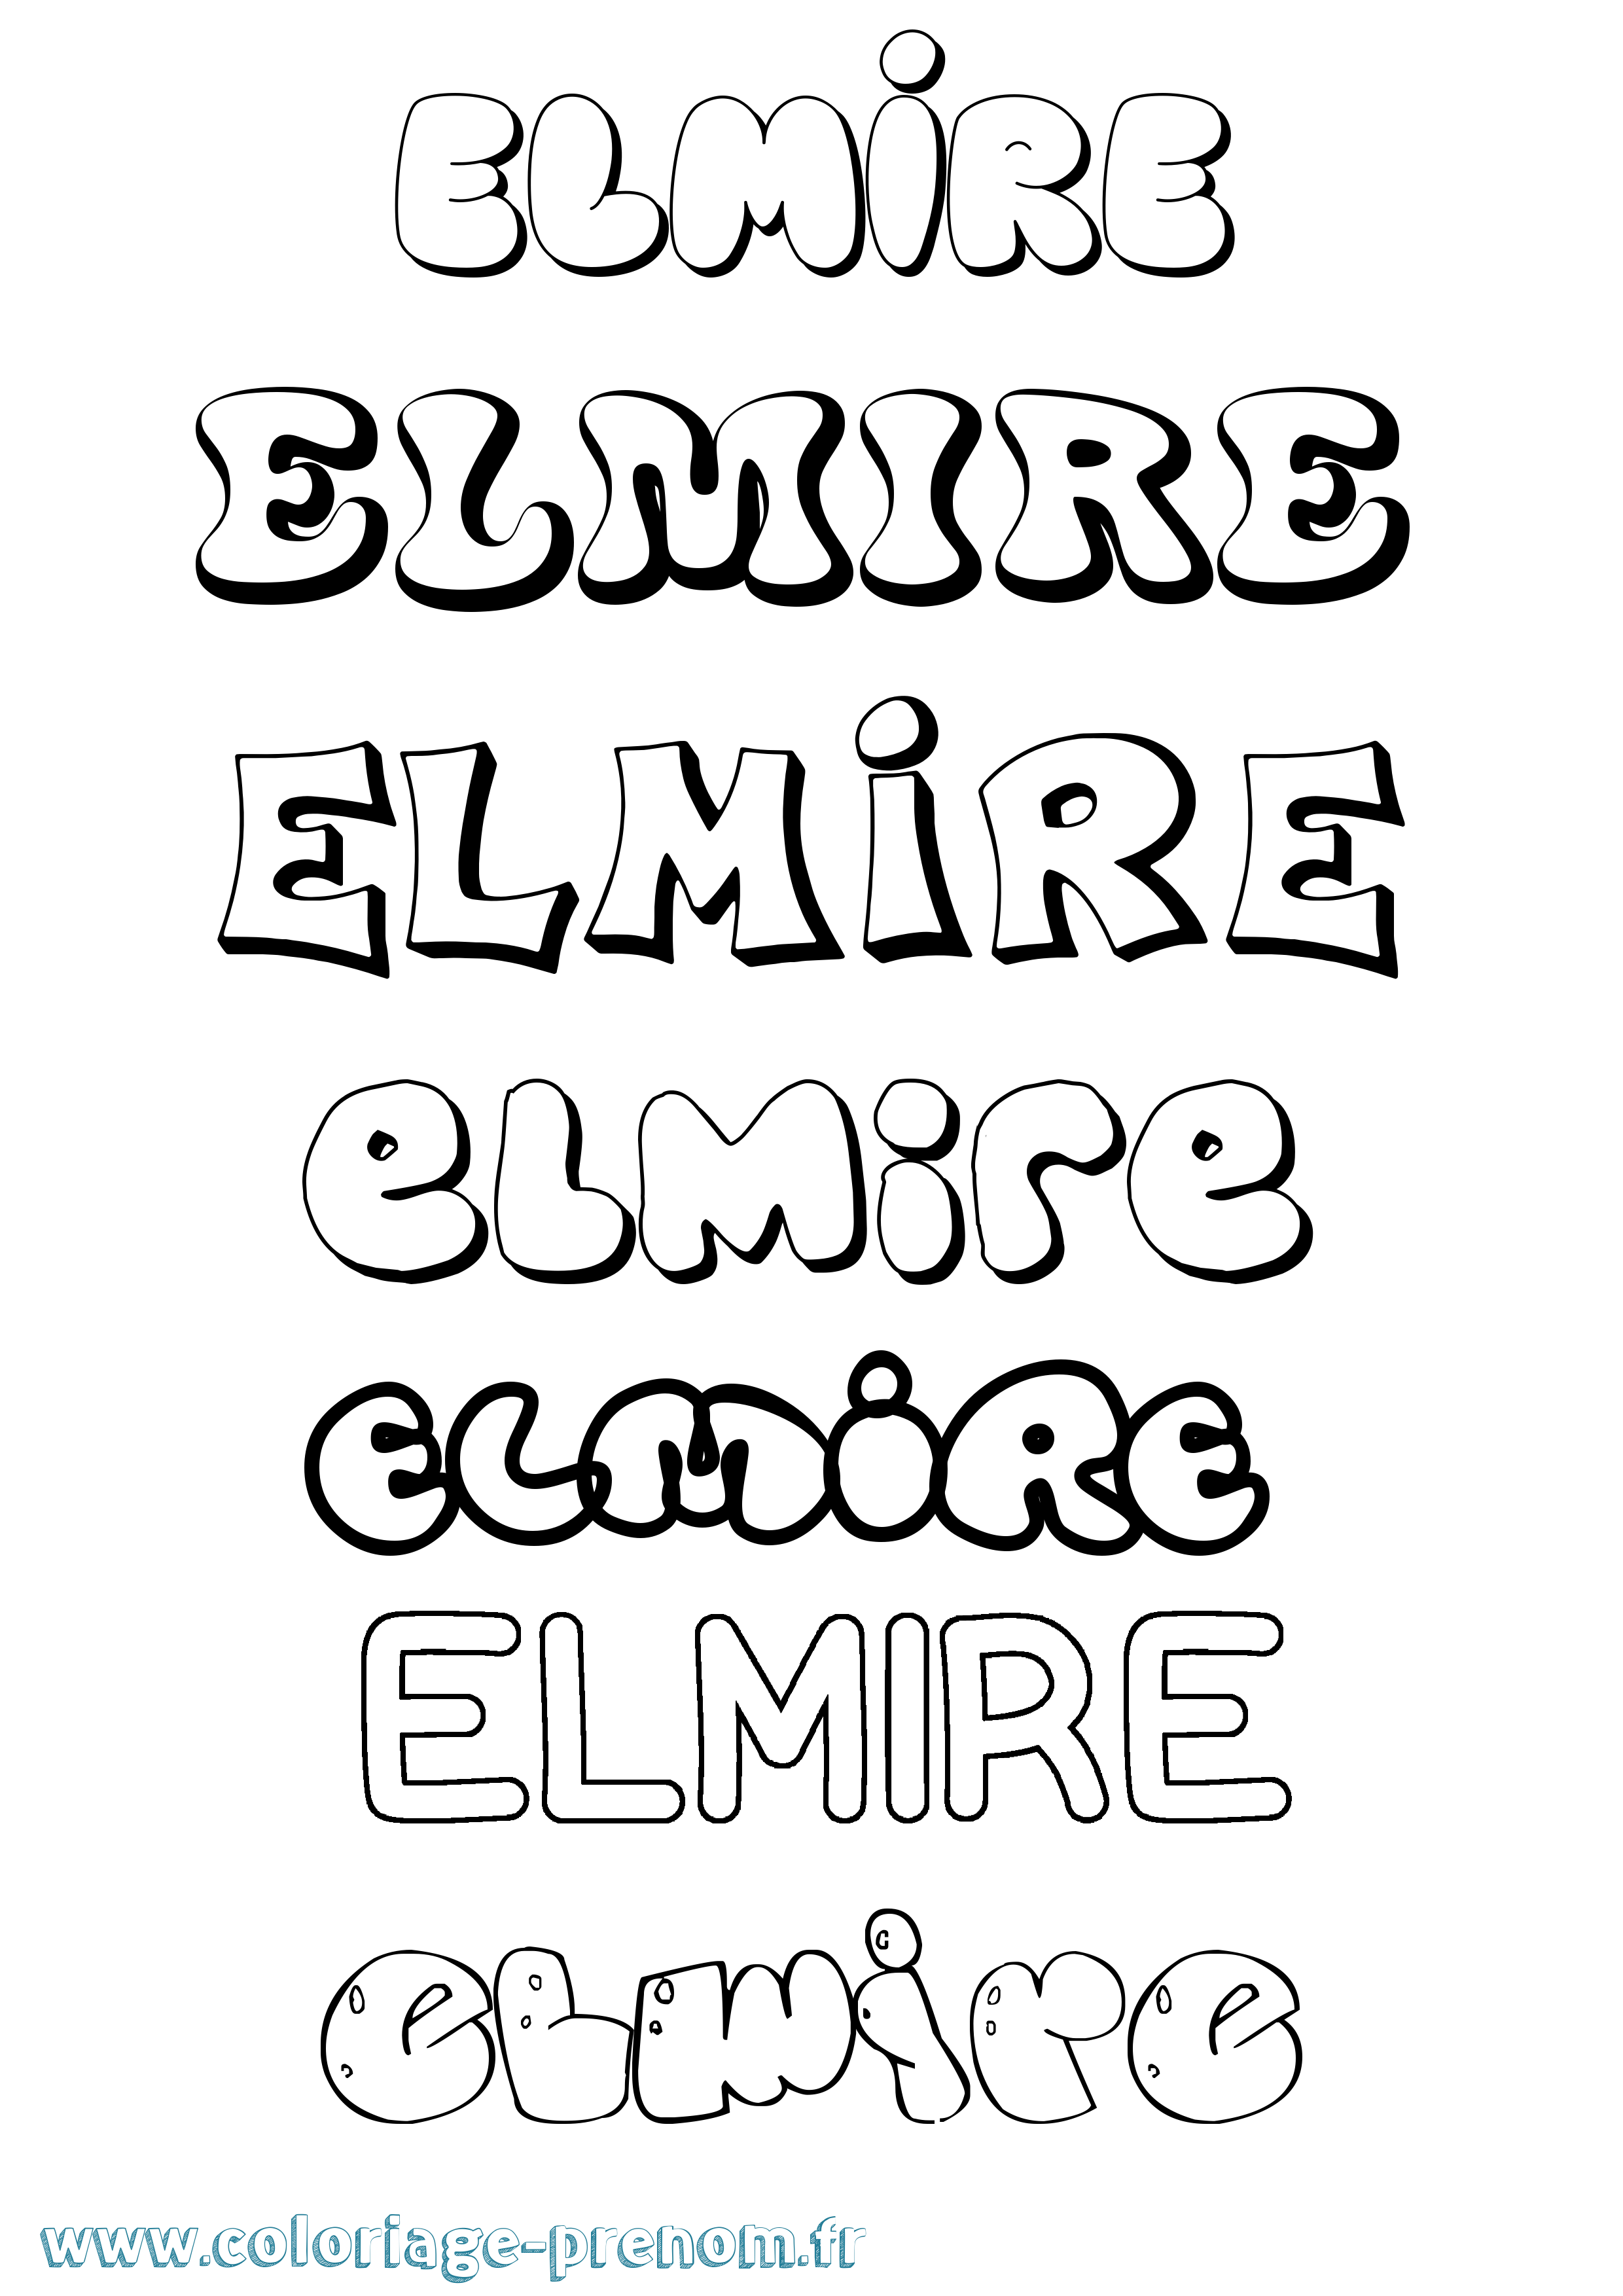 Coloriage prénom Elmire Bubble